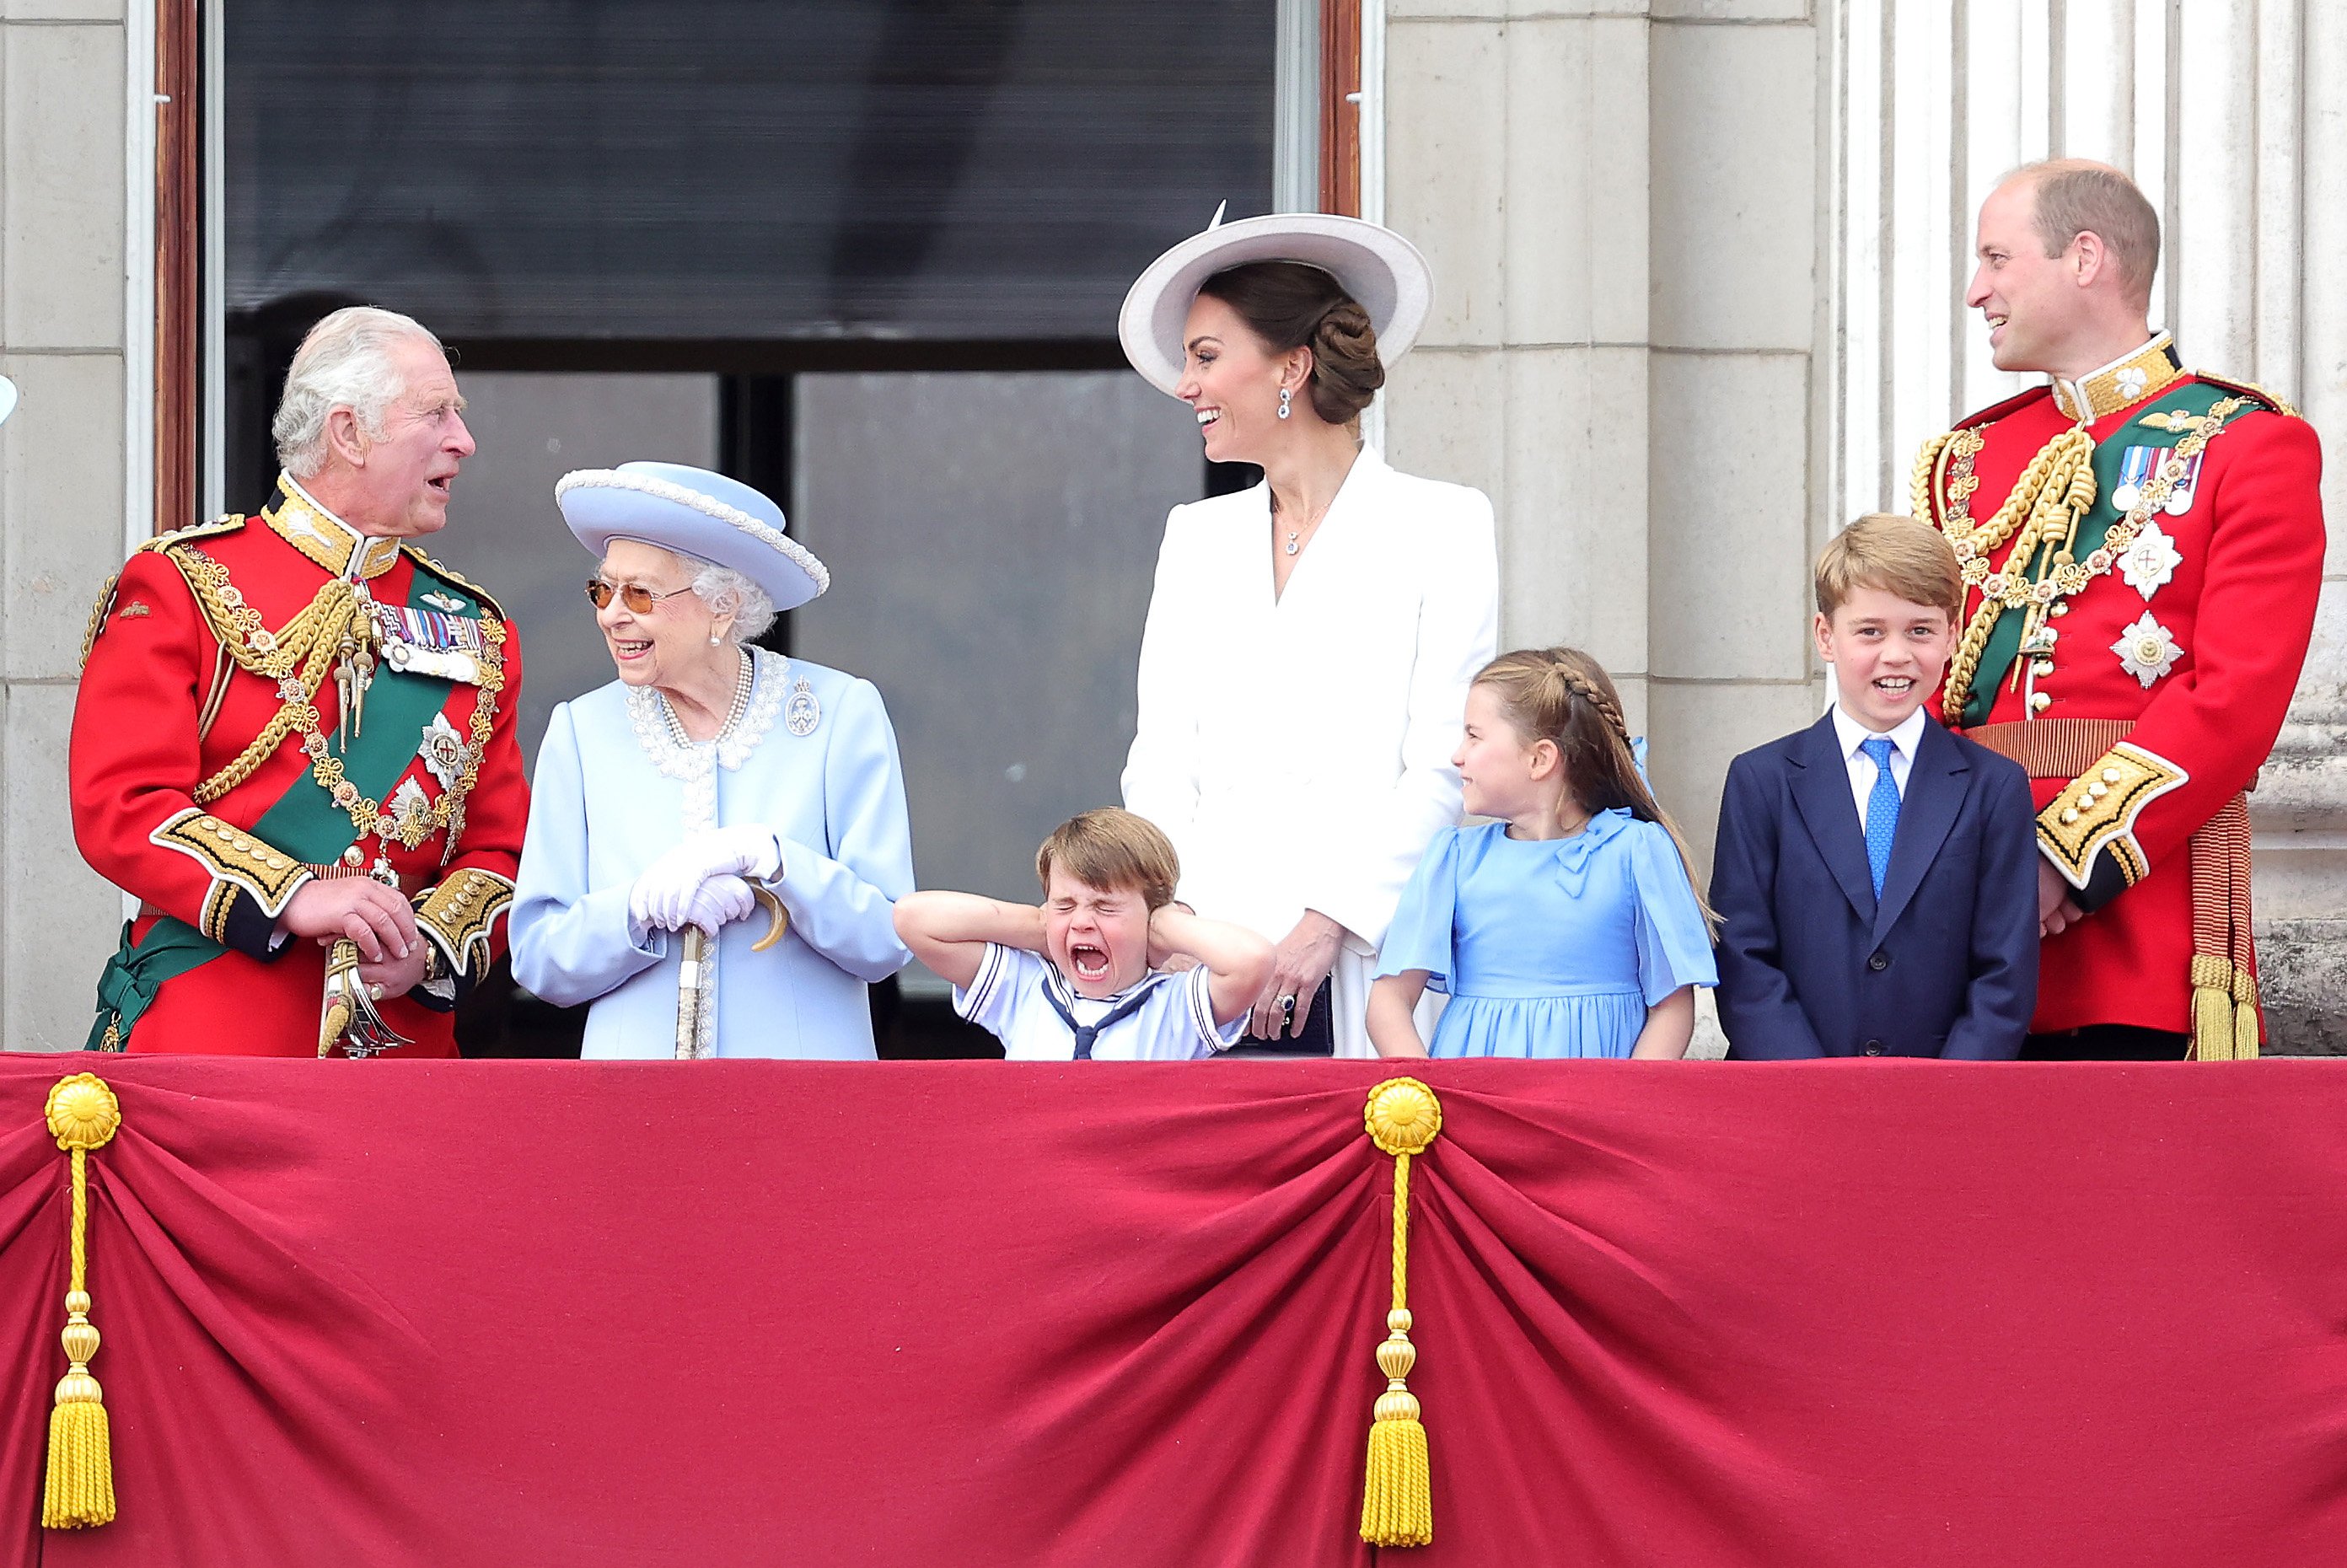 أربعة أيام من الاحتفالات بمناسبة اليوبيل البلاتيني للملكة إليزابيث الثانية في يونيو/حزيران. وشوهدت الملكة البالغة من العمر 96 عاما وهي تشاهد القوات العائدة من احتفال 